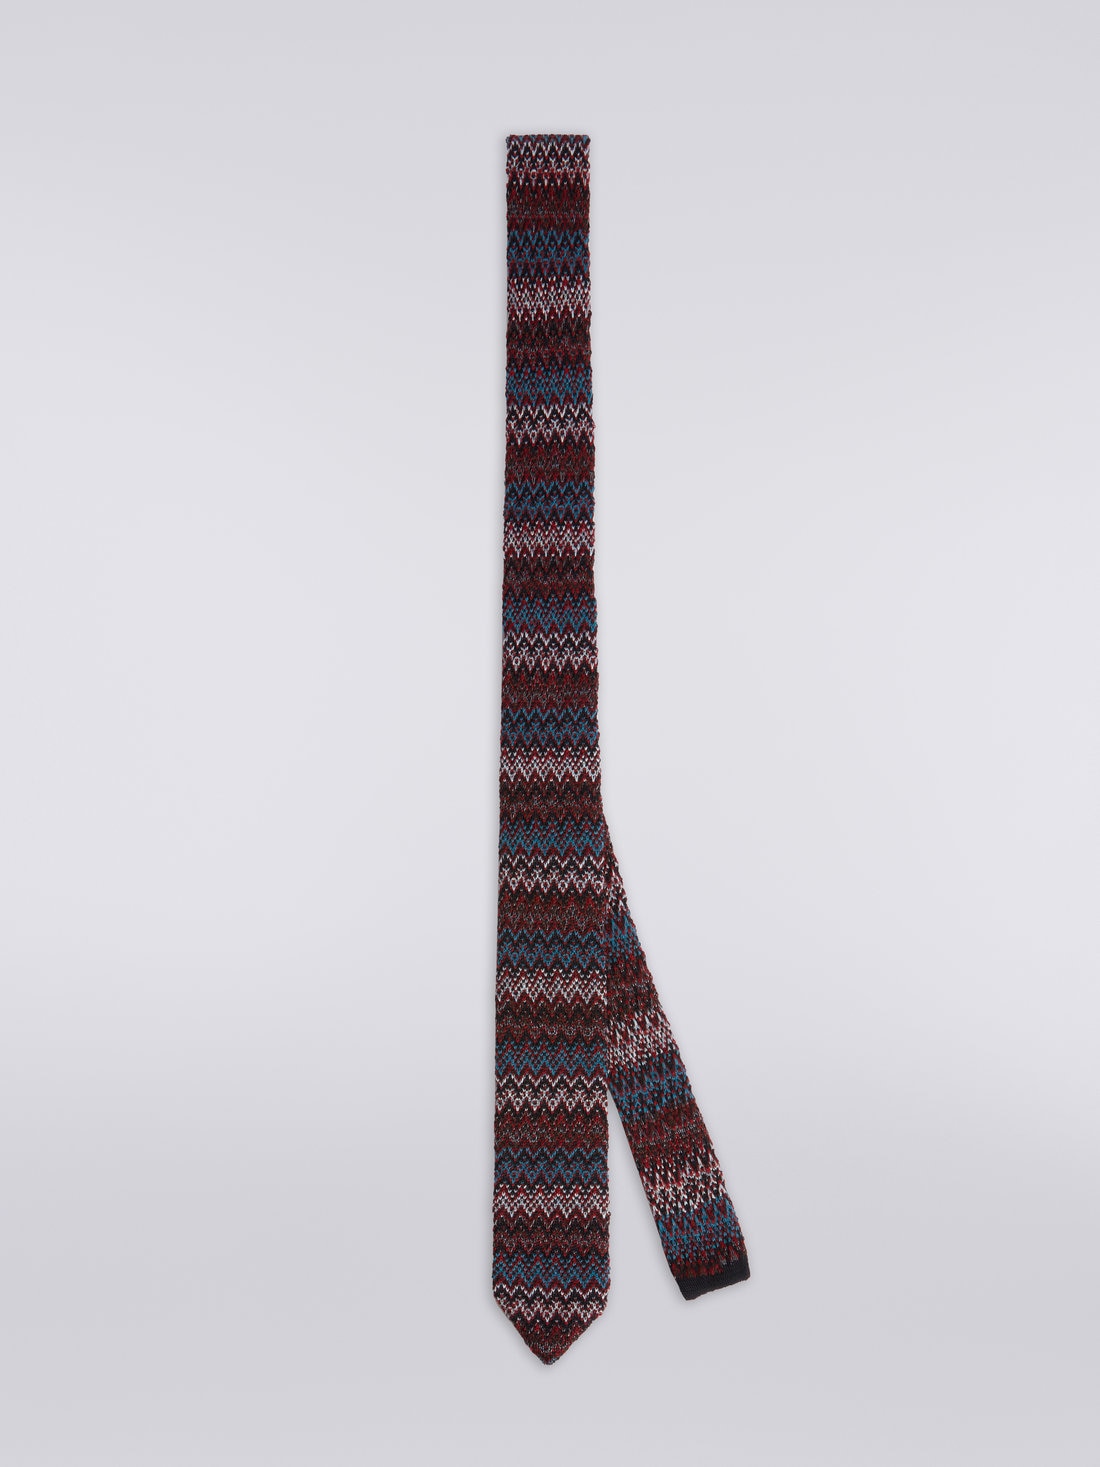 Corbata de lana y seda a espigas, Multicolor  - 8053147023441 - 0